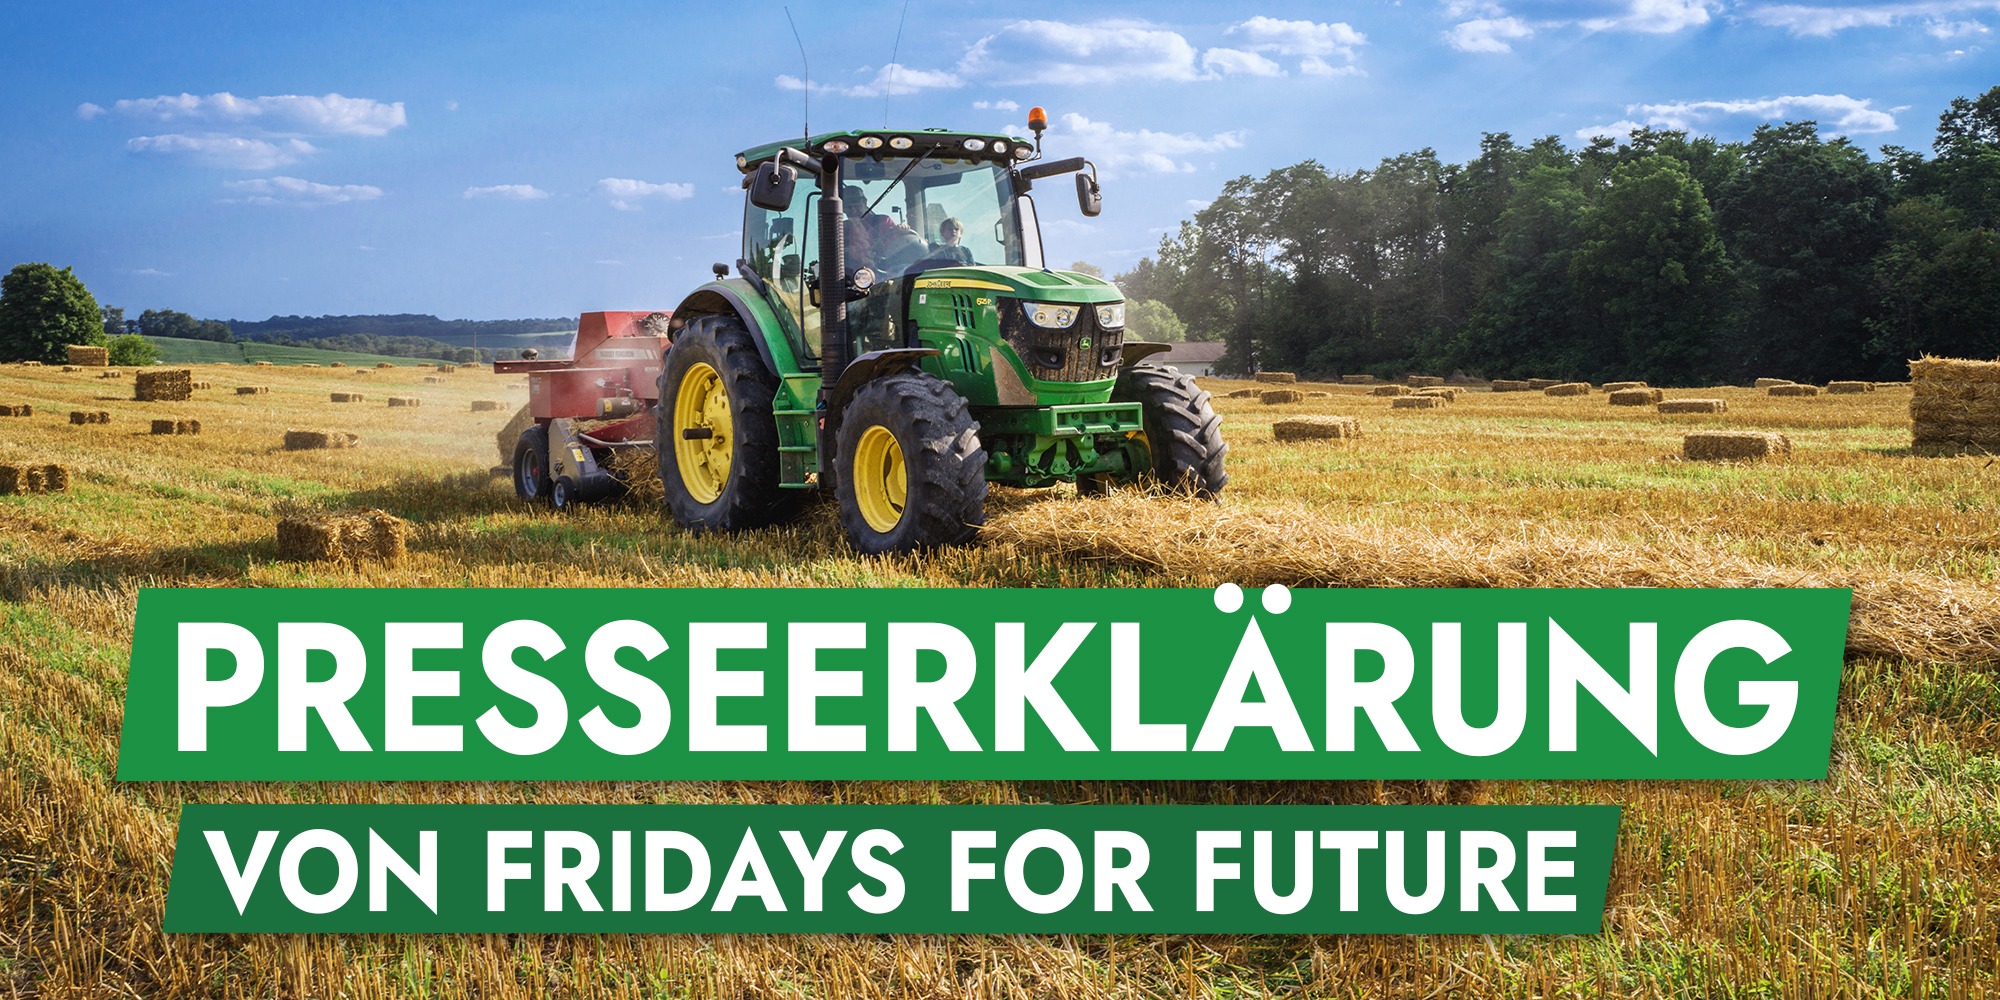 Presseerklärung: Fridays for Future entsetzt über Beschlüsse der Bundesregierung zur Gemeinsamen Agrarpolitik